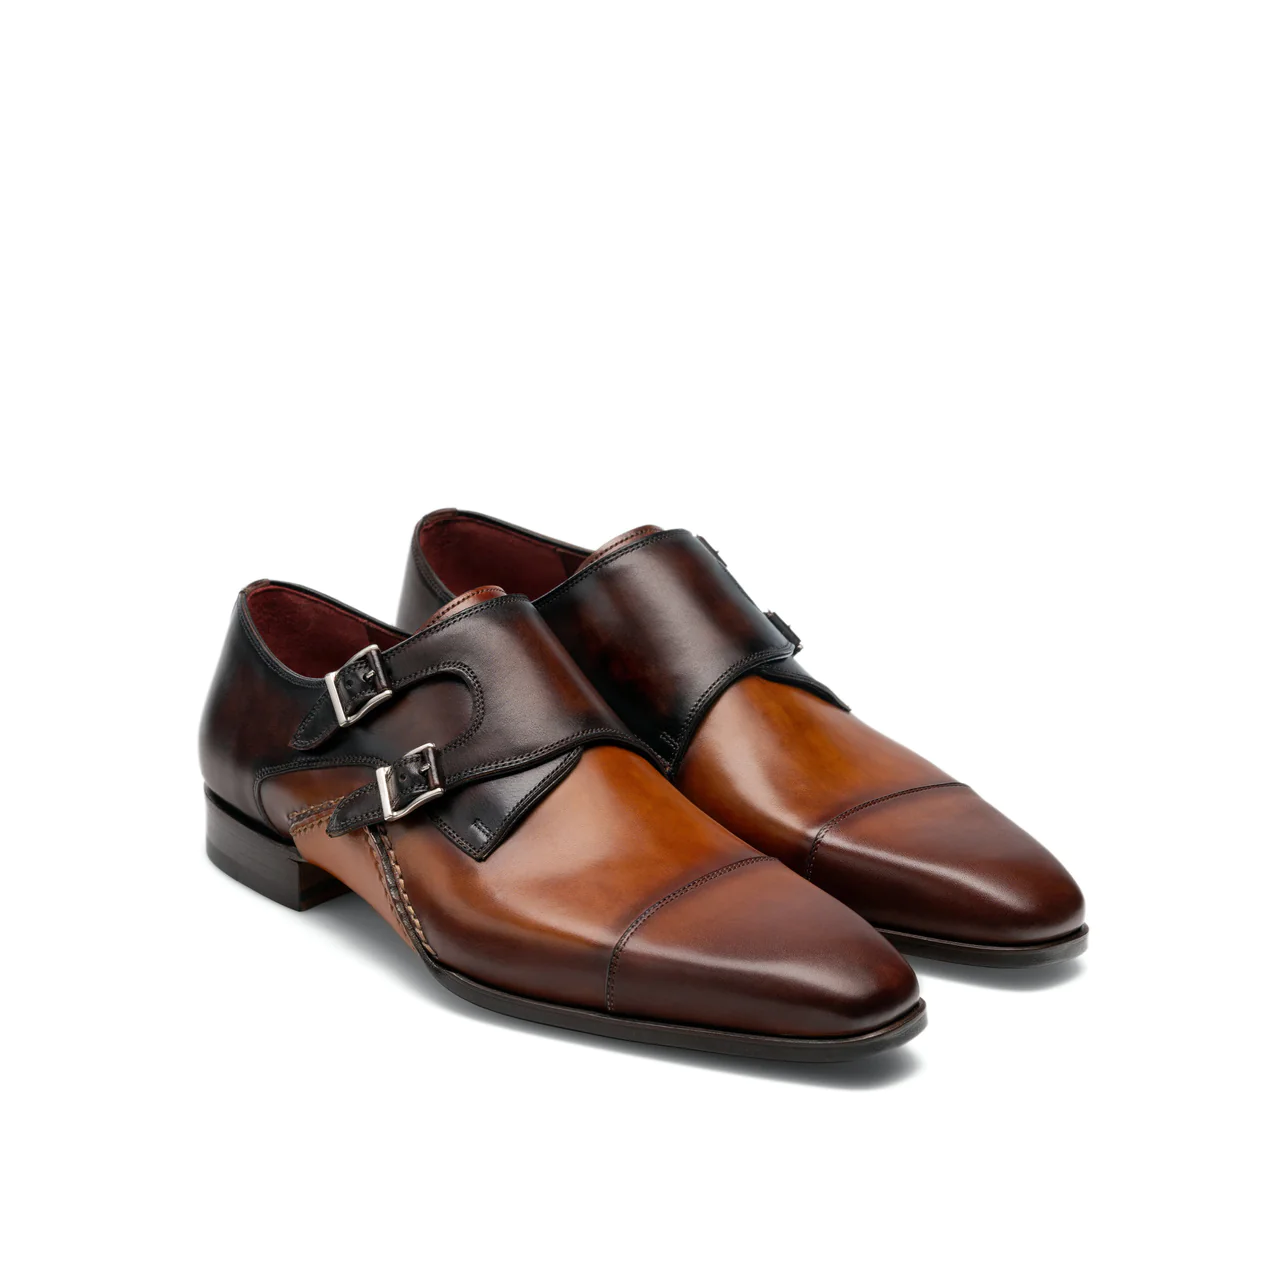 Magnanni Double Monk Strap Shoes